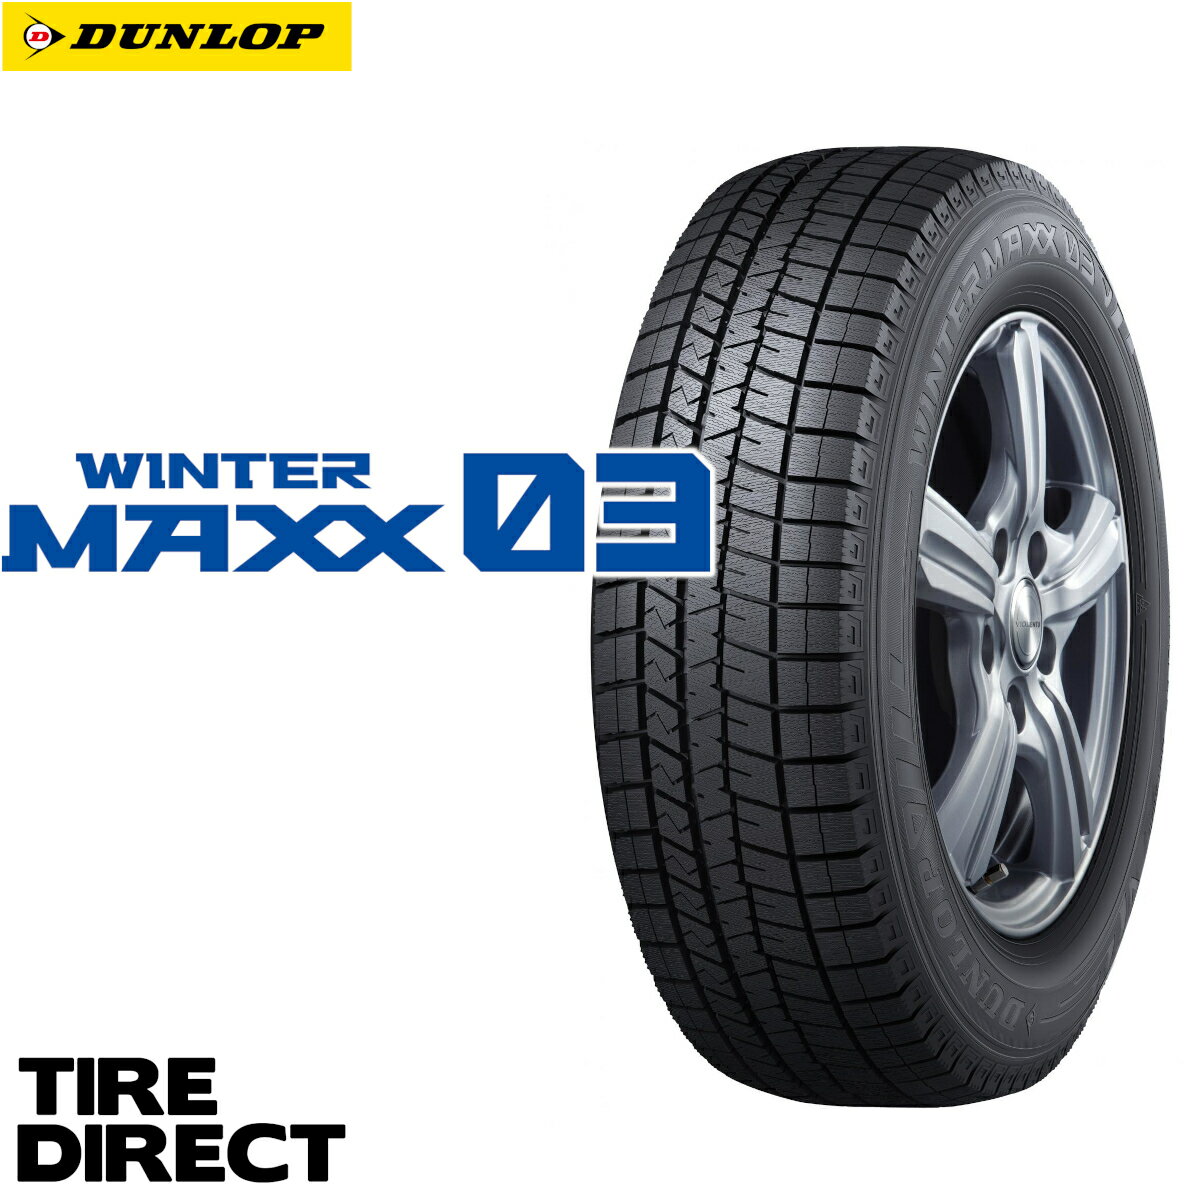 新品 ダンロップ ウインターマックス WM03 235/60R18 107Q XL DUNLOP WINTER MAXX ウィンターマックス 235/60-18 冬タイヤ スタッドレスタイヤ